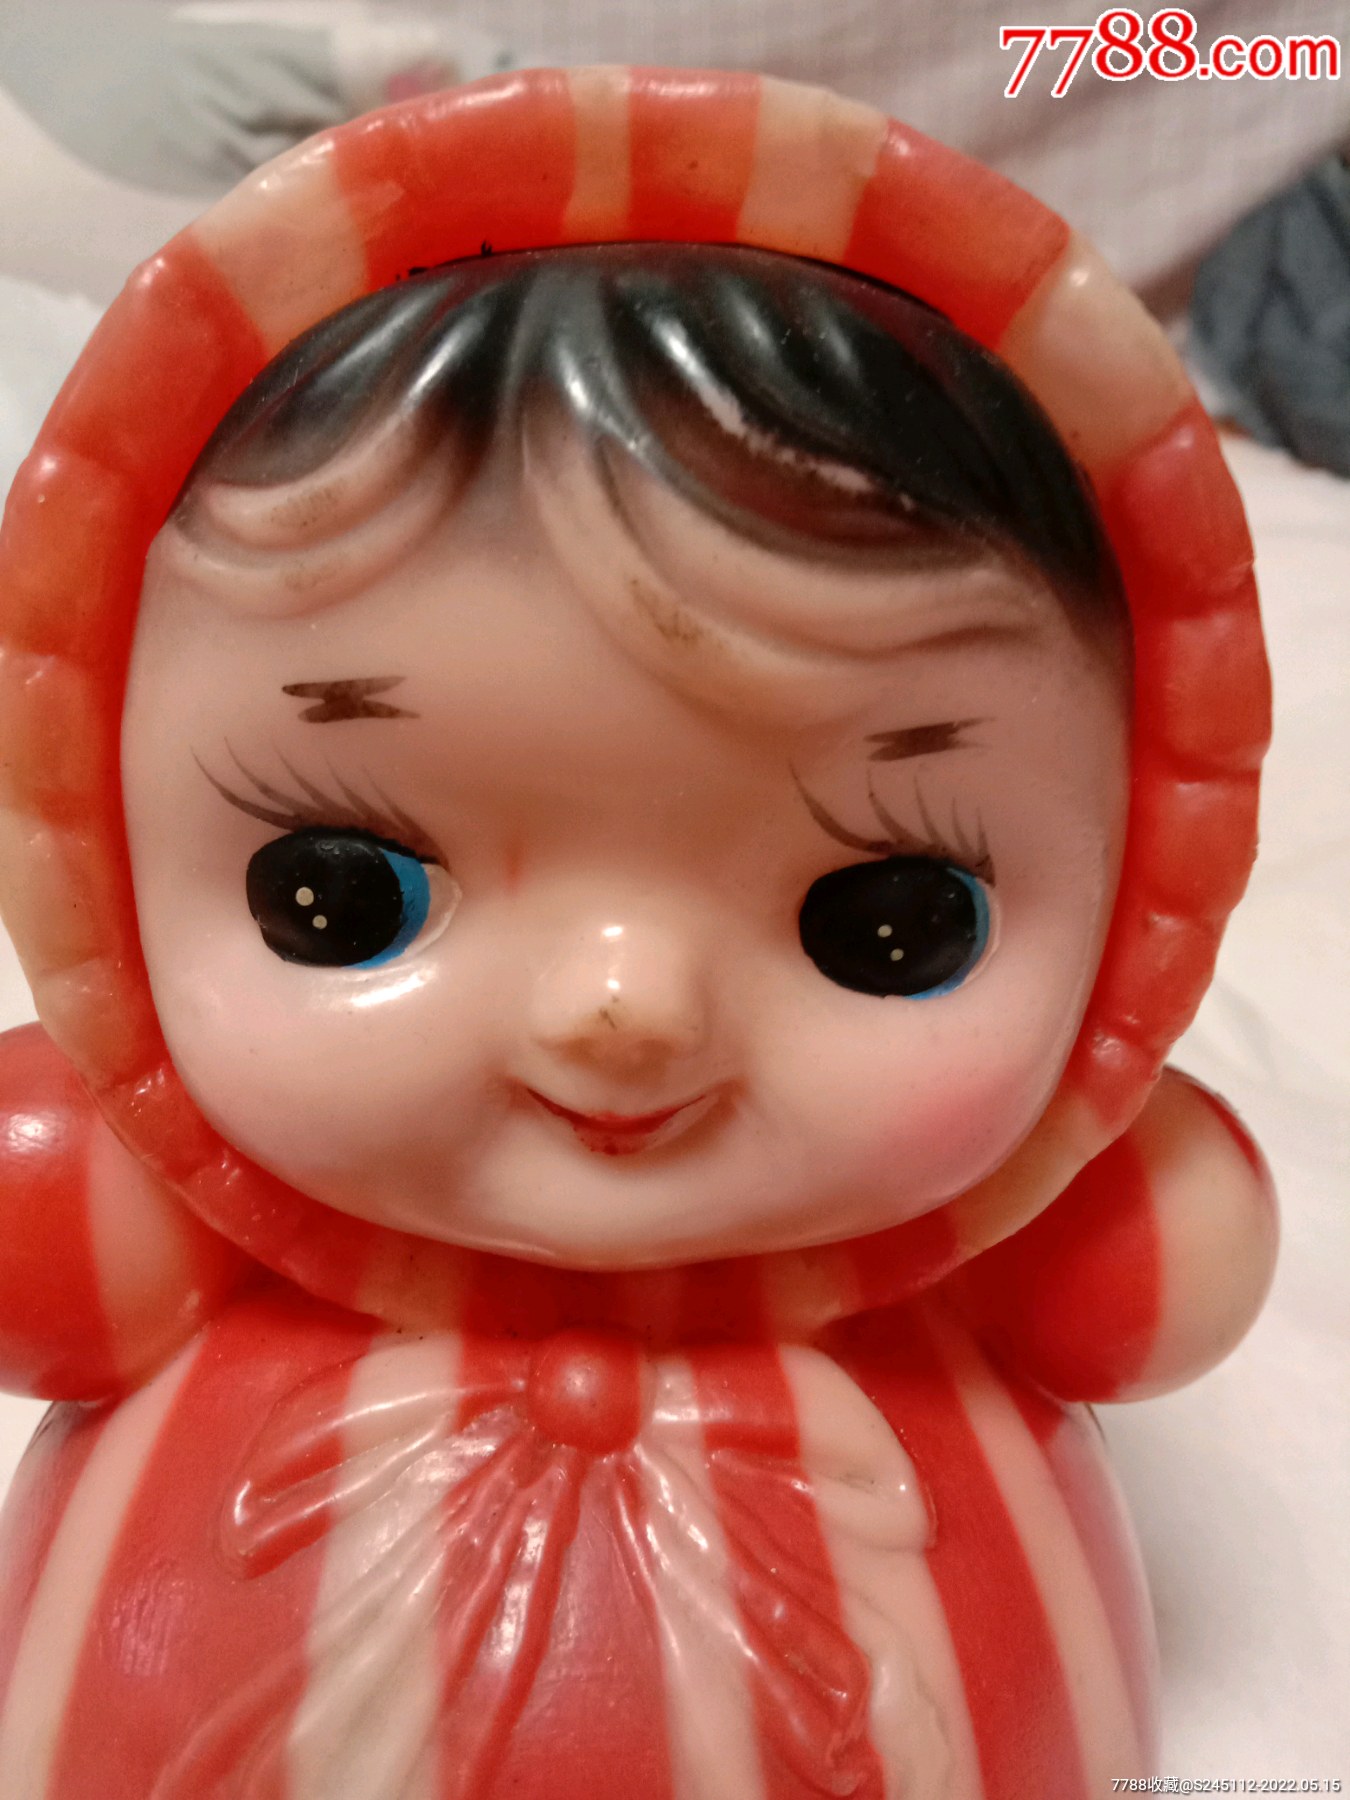 老玩具塑料娃娃不倒翁娃娃功能正常见图见描述